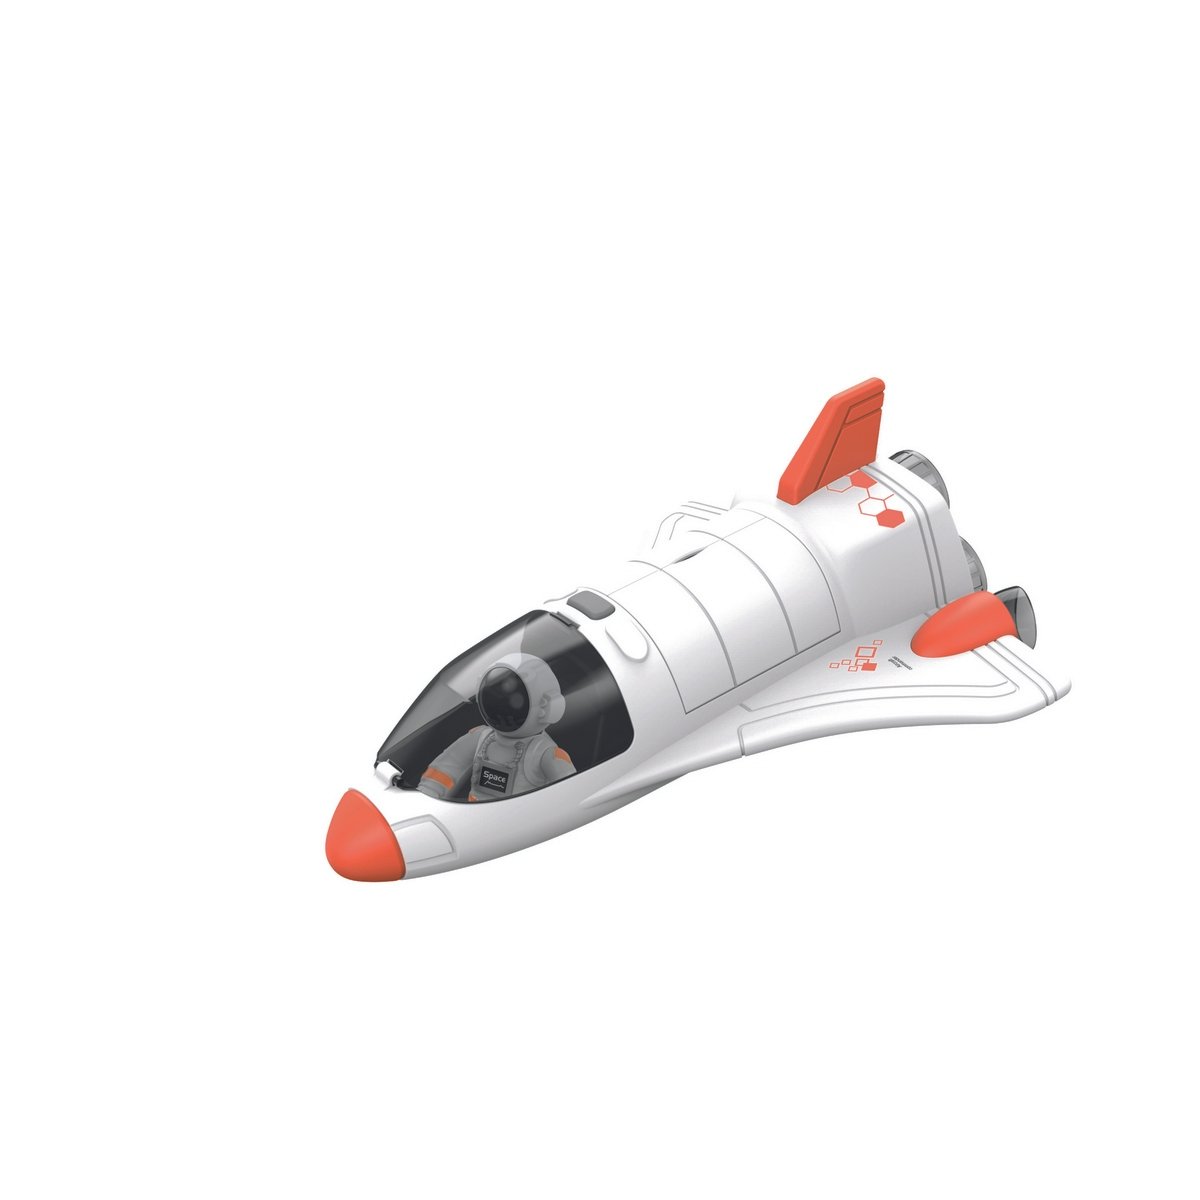 Fusée Playmobil et son satellite, le cadeau spatial pour enfant !